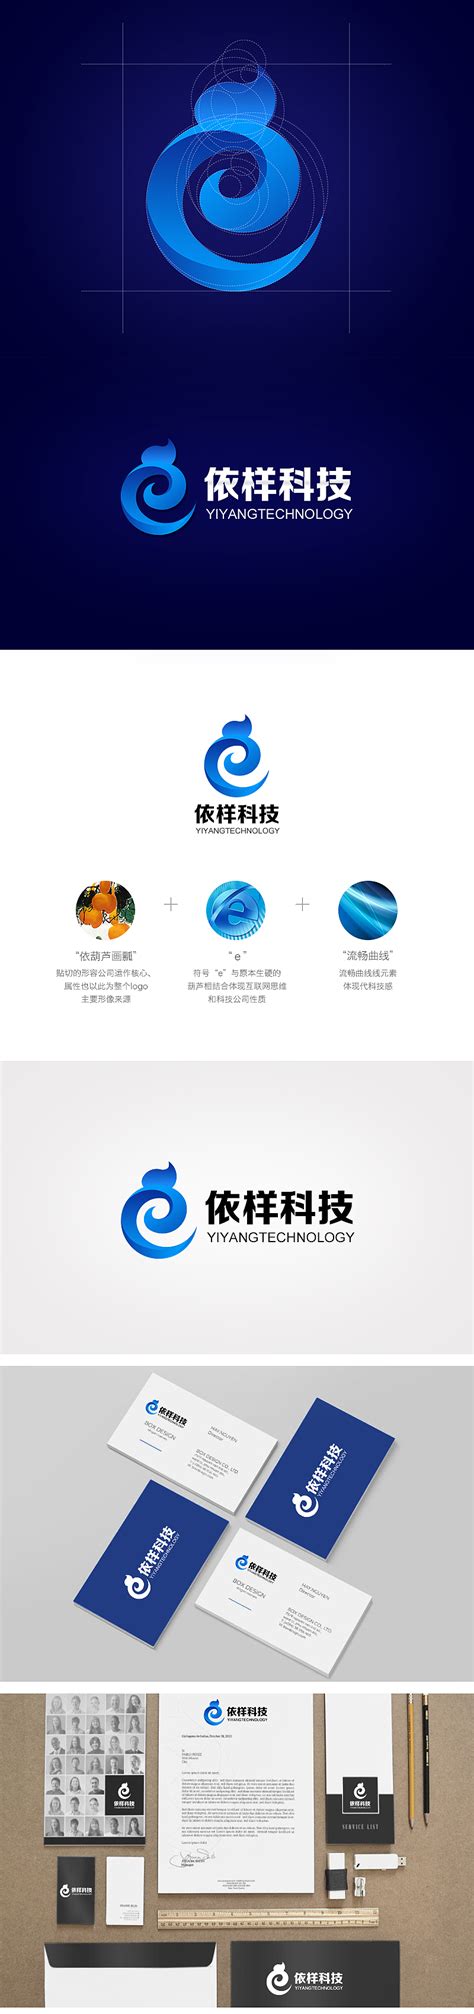 中国电建集团透平科技有限公司 企业新闻 透平科技公司产品入选中央企业创新成果